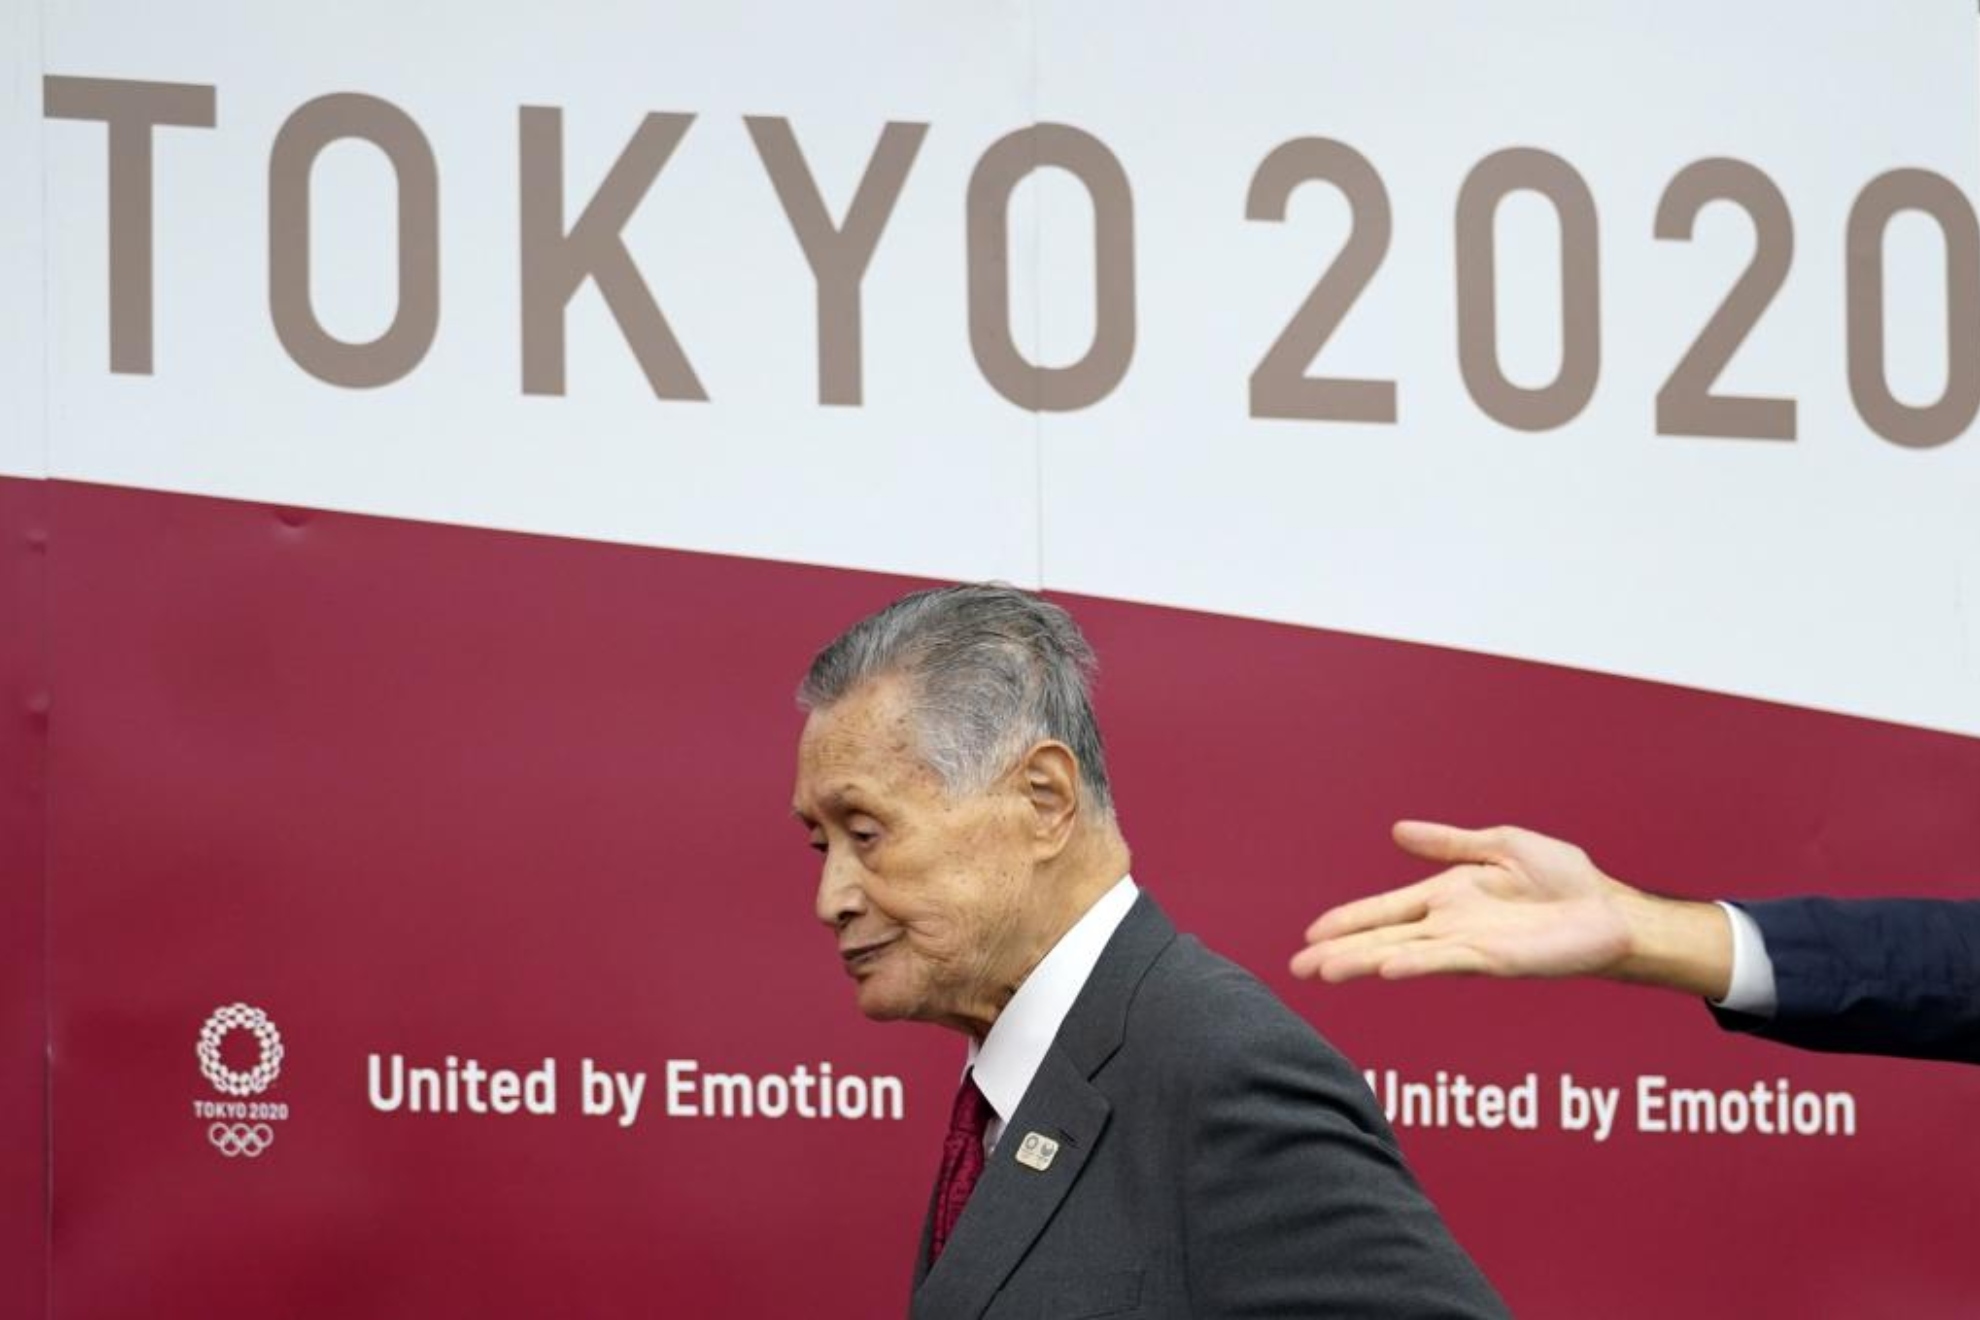 El expresidente de Tokio 2020 afirma que Zelenski es tan culpable de la guerra como Putin